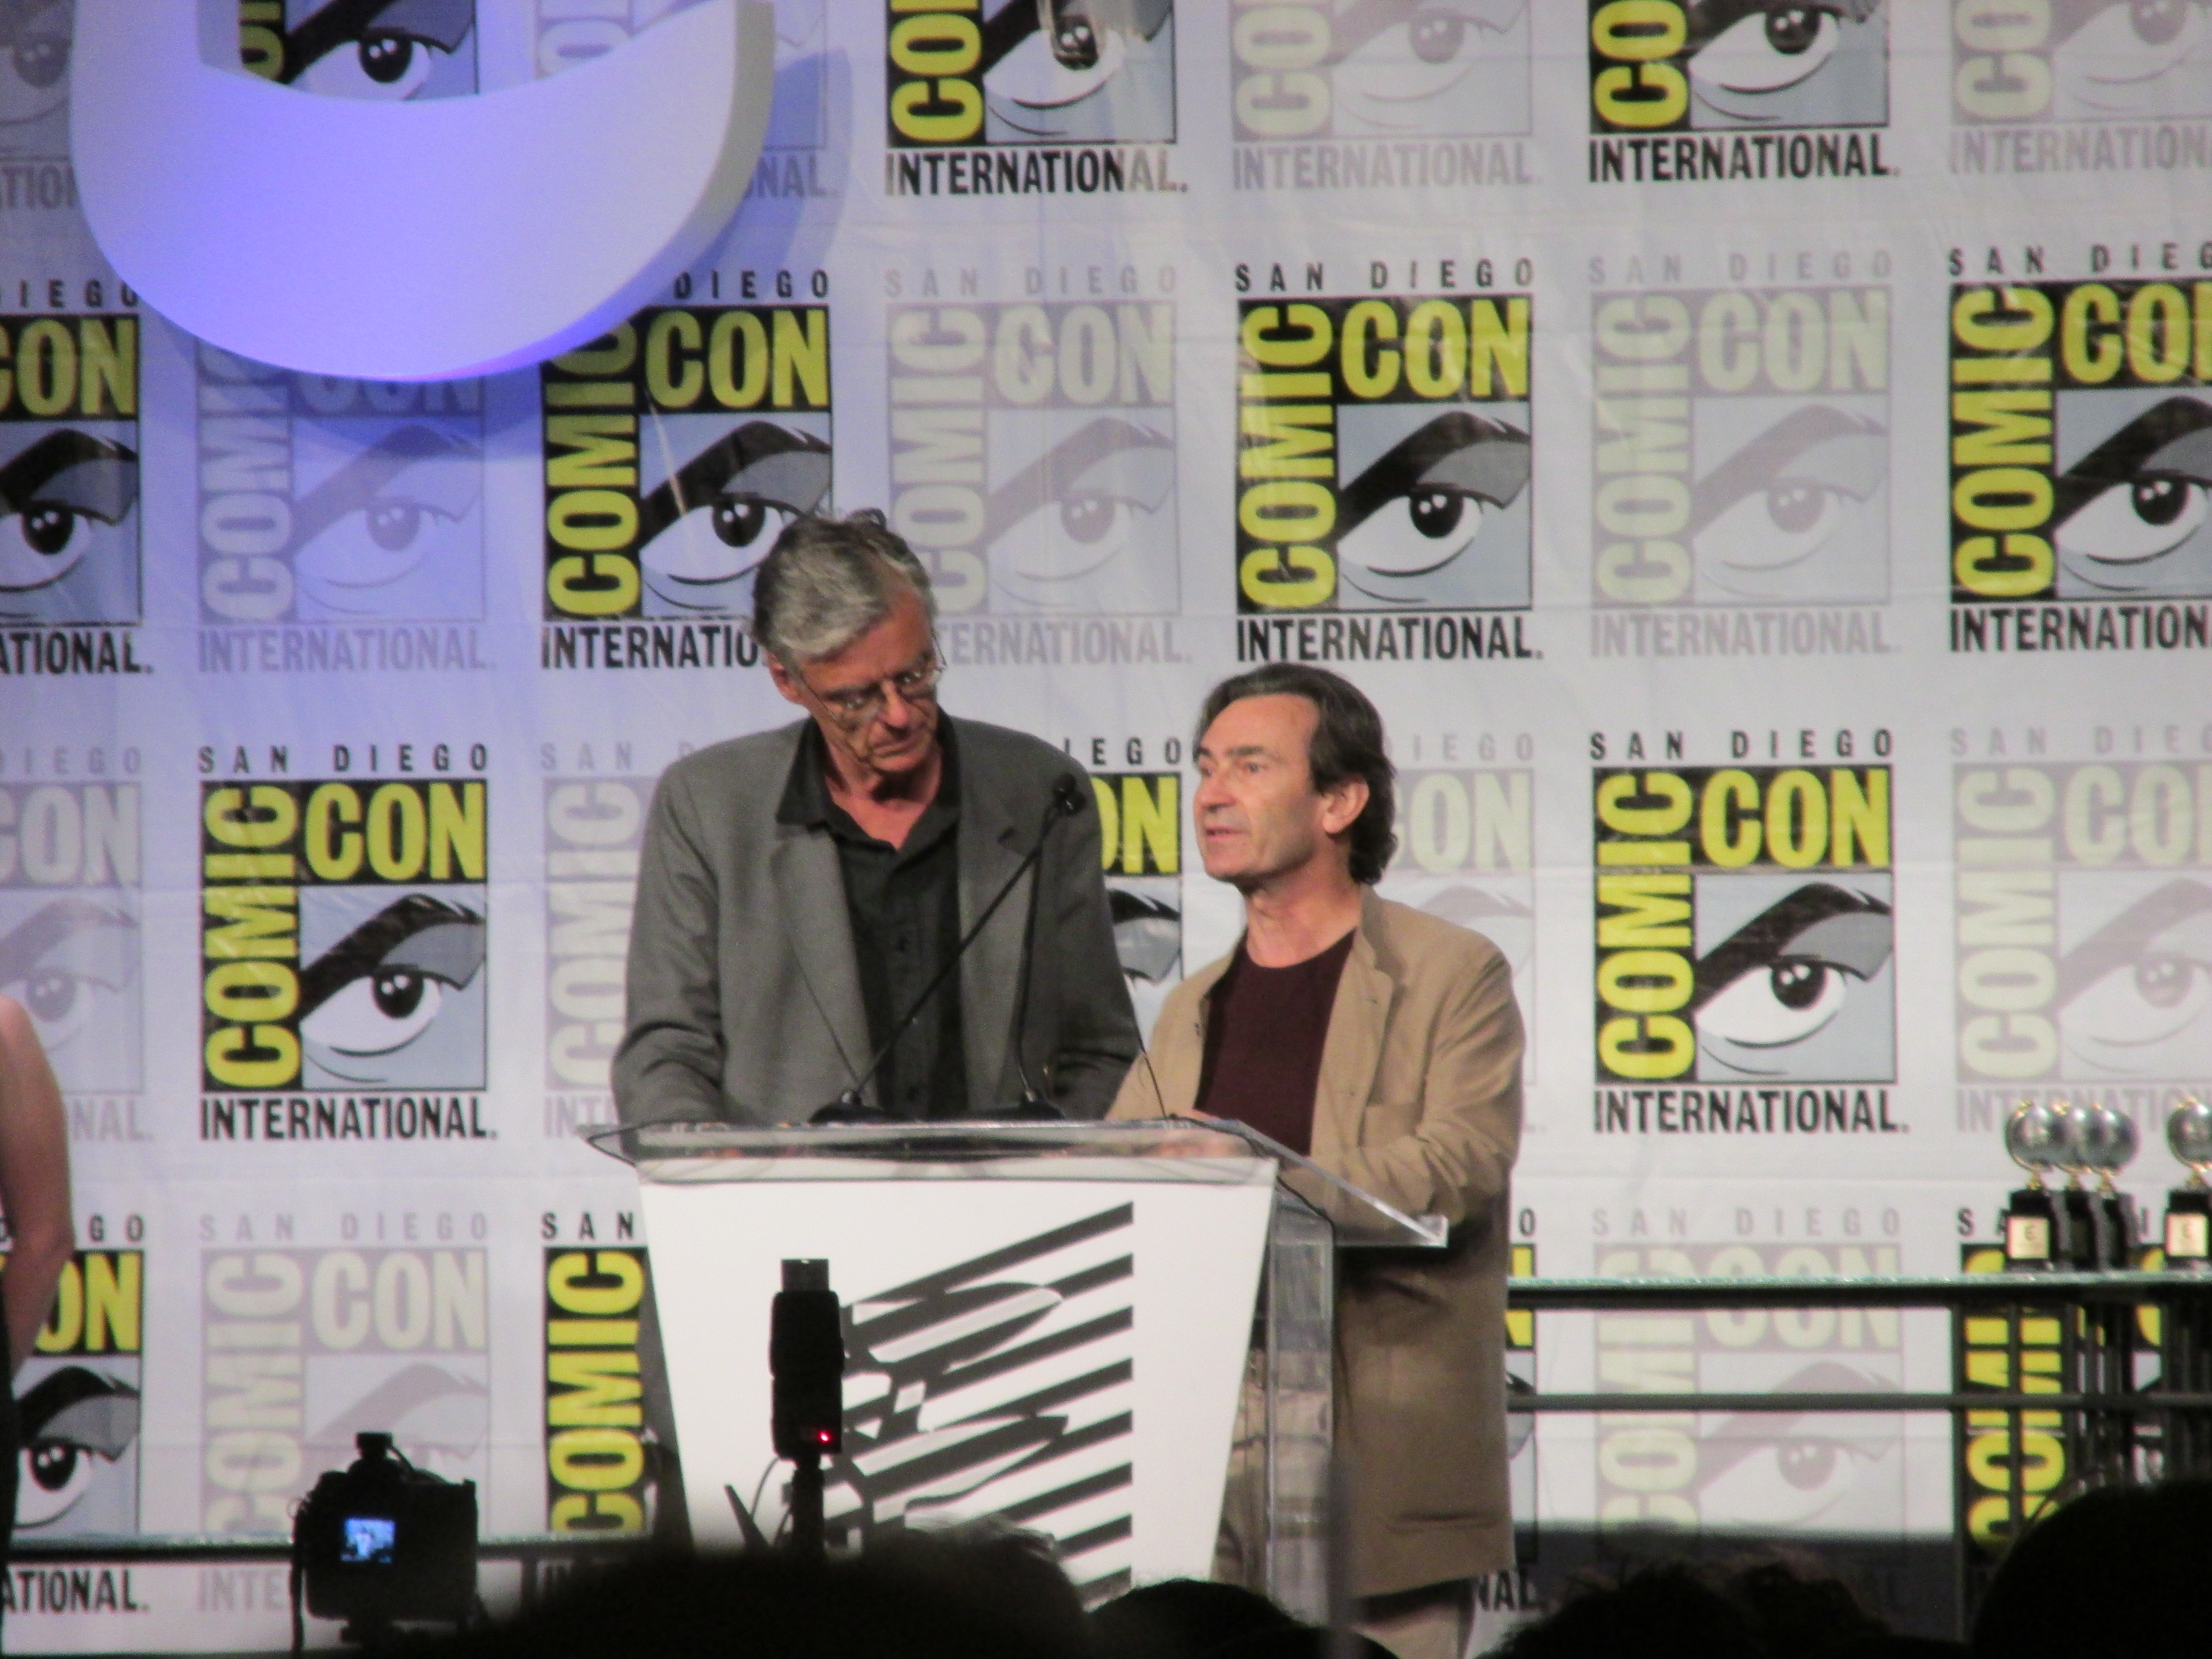 François Schuiten and Benoît Peeters presenting the Eisner Awards at Comic Con 2014